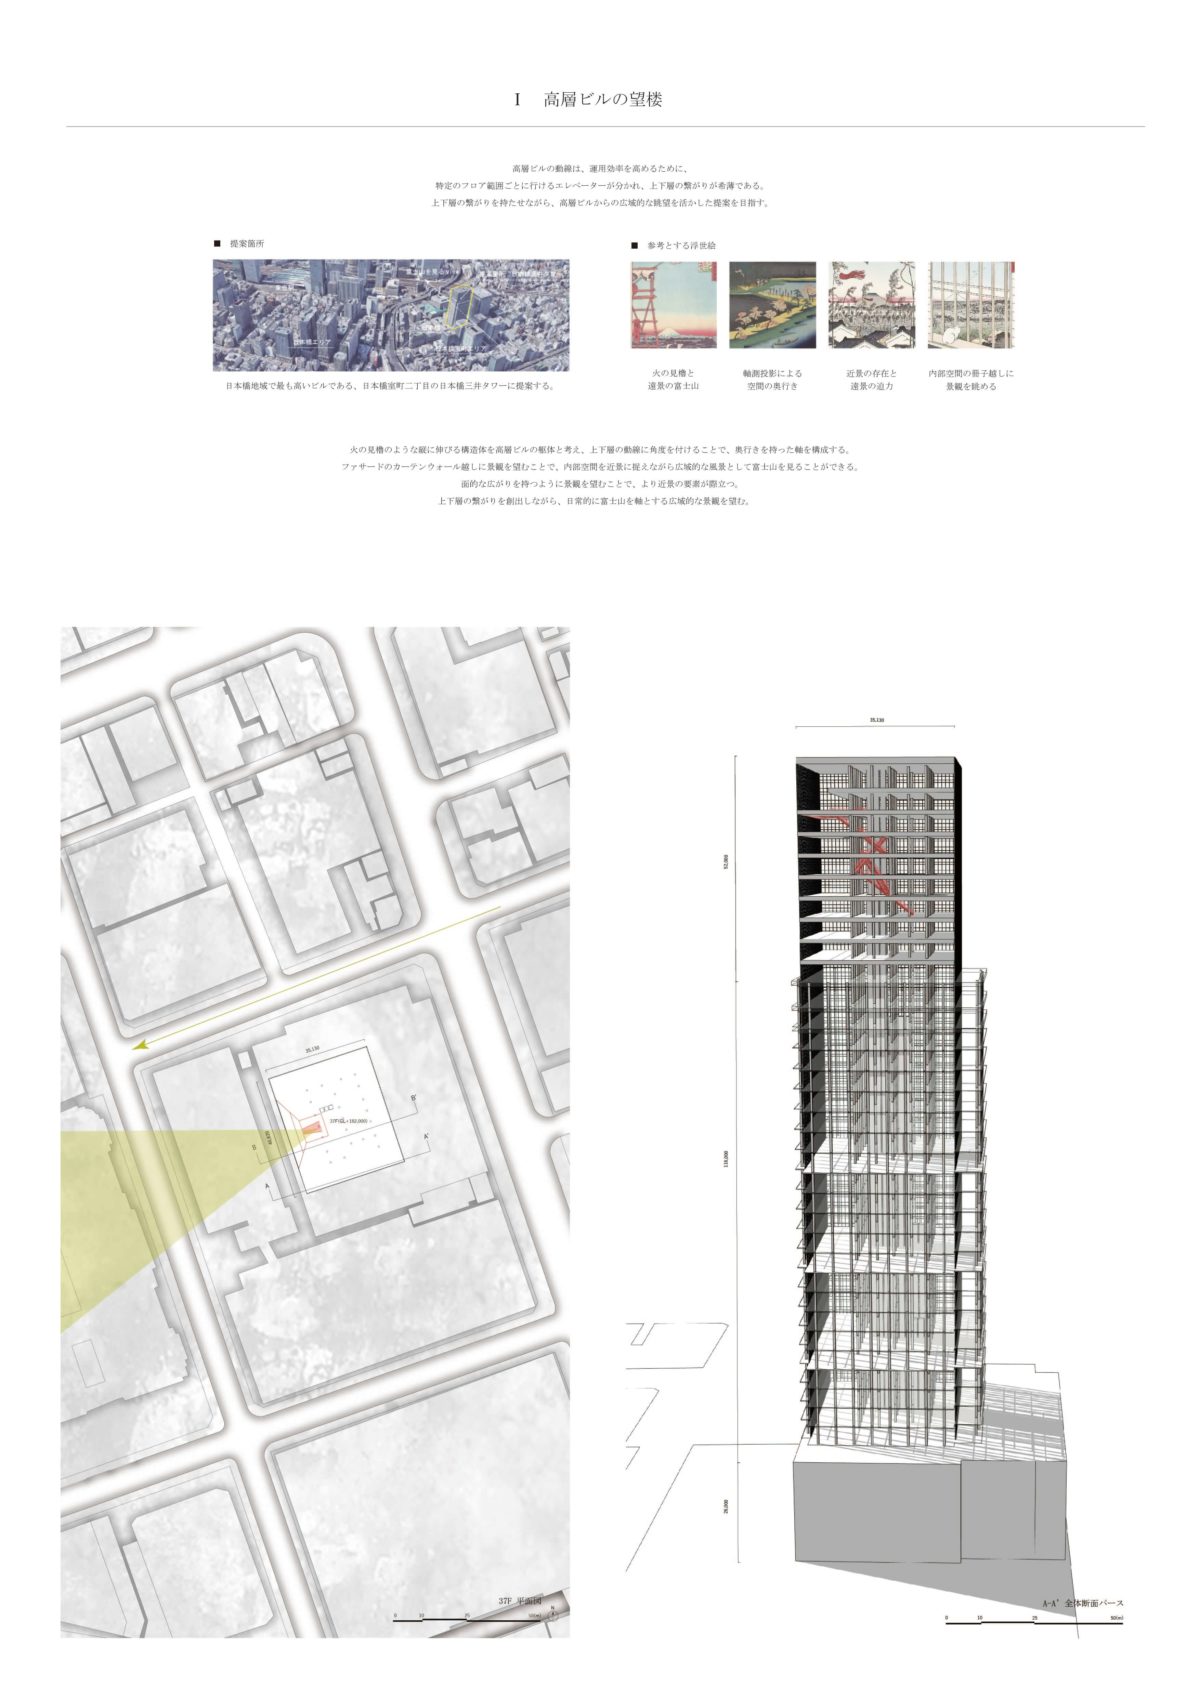 風景を想起する第五世代美術館建築 -歌川広重による名所江戸百景の分析を通して--4